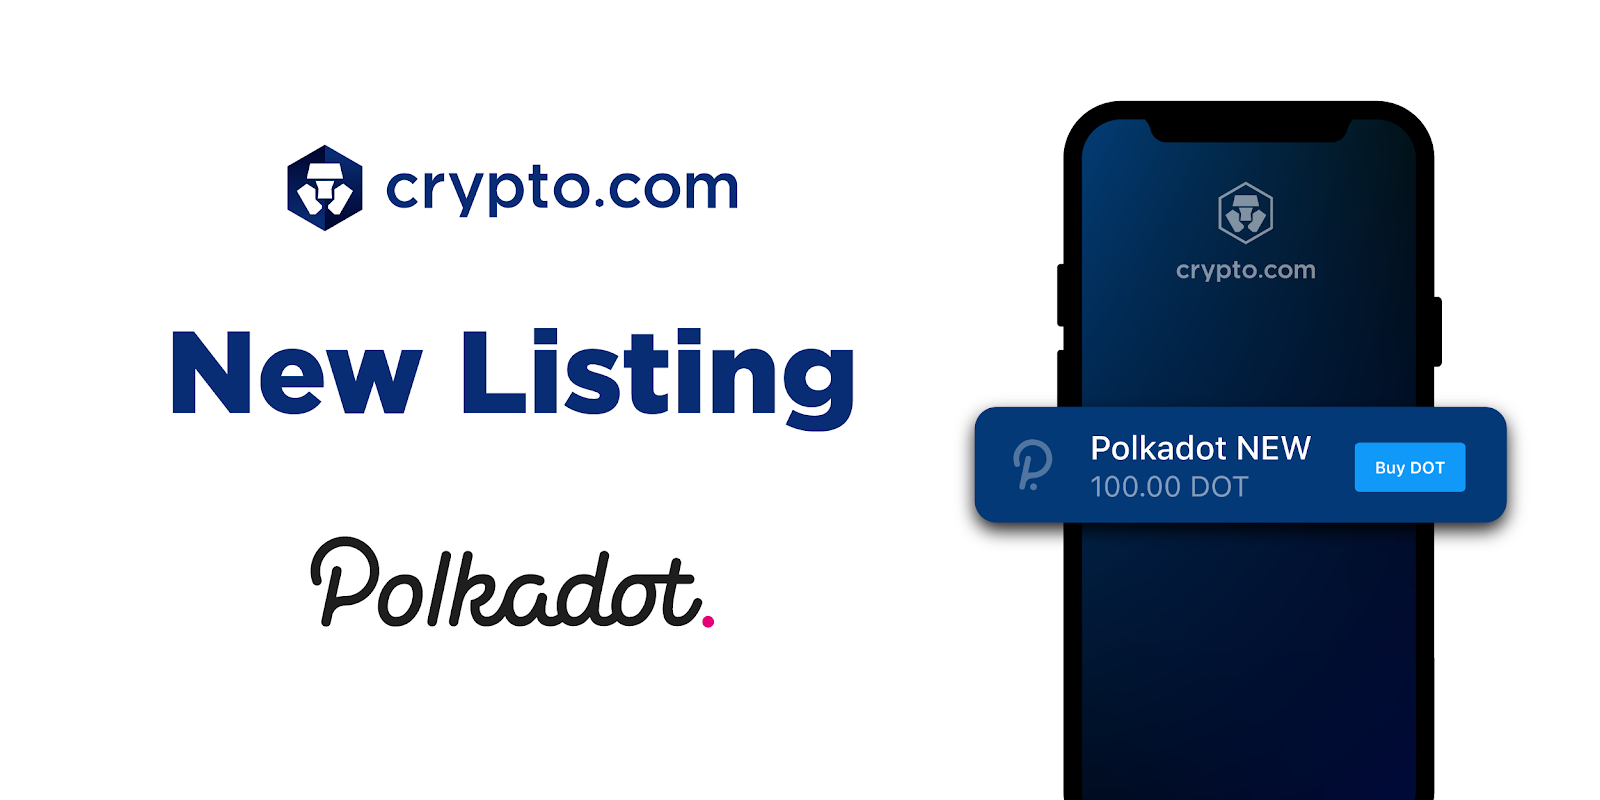 Buy Polkadot on Crypto.com